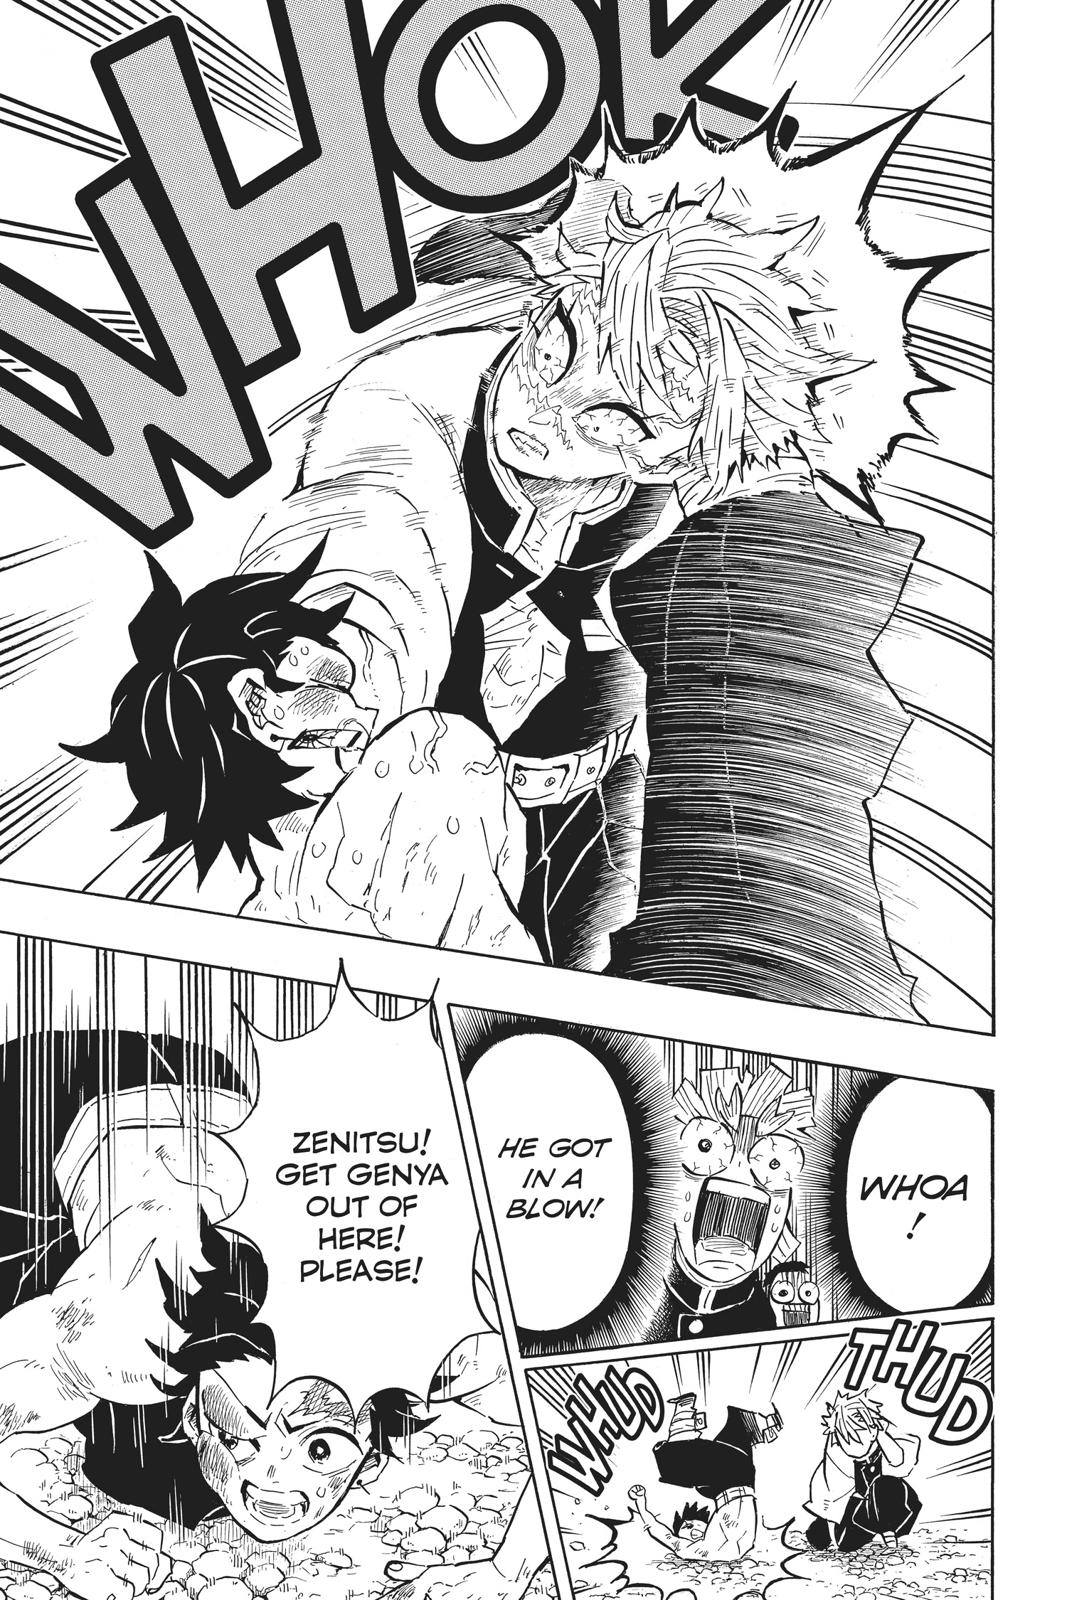 Demon Slayer Manga Manga Chapter - 133 - image 12